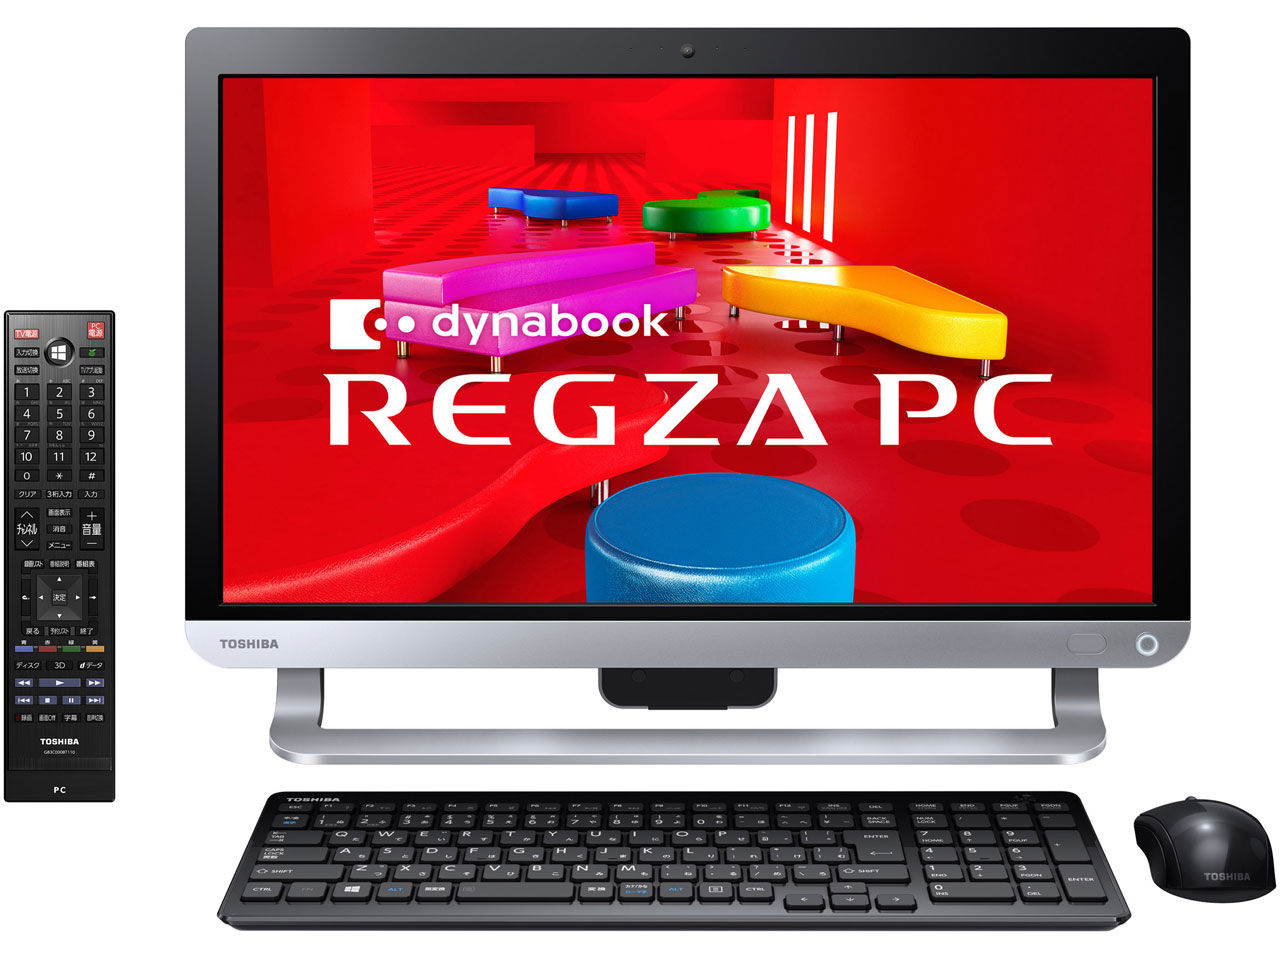 REGZA PC D713 D713/T7JB PD713T7JBMB [プレシャスブラック]の製品画像